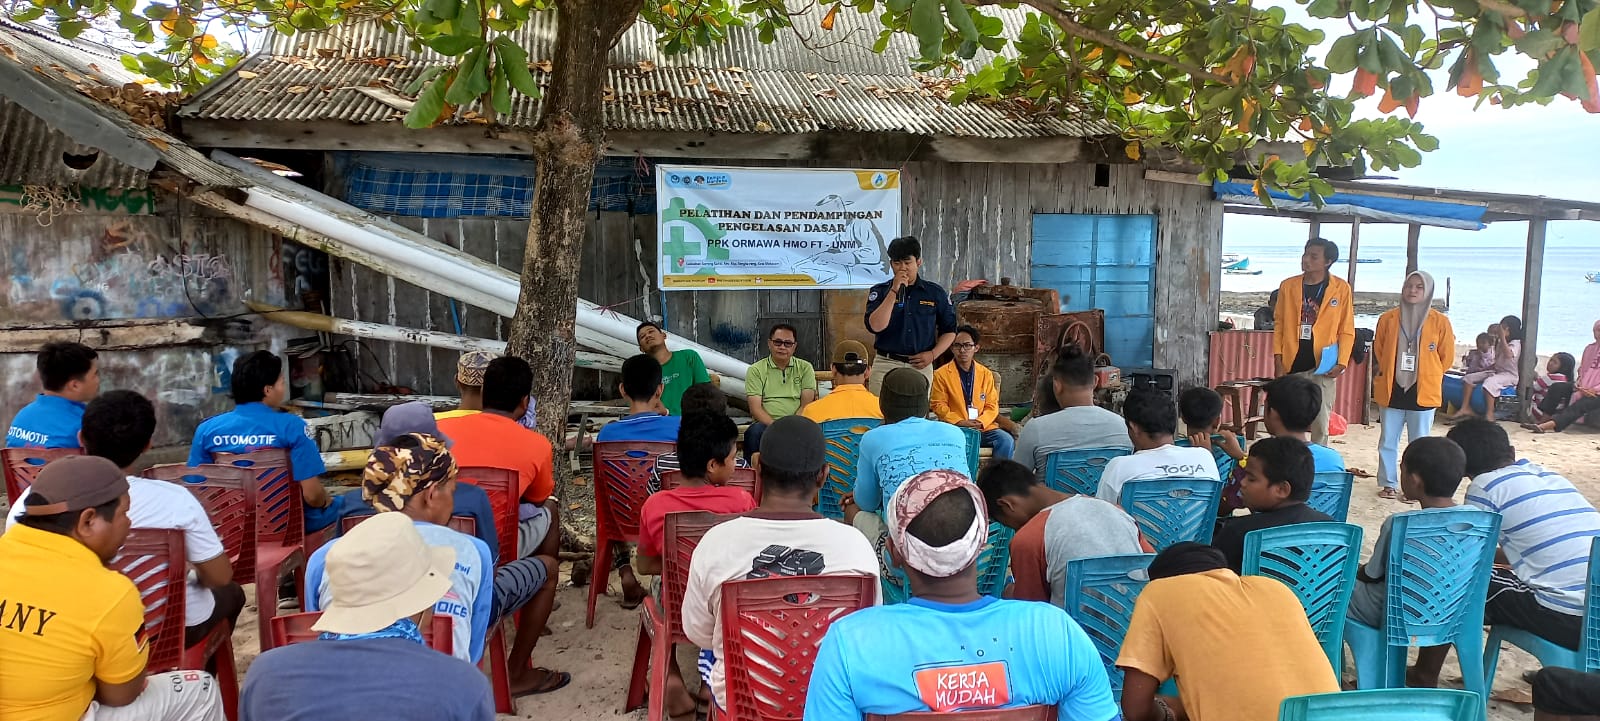 Pelatihan Pendampingan Pengelasan  Dasar bagi Warga Nelayan Barrang Caddi oleh Mahasiswa Fakultas Tekhnik UNM Makassar